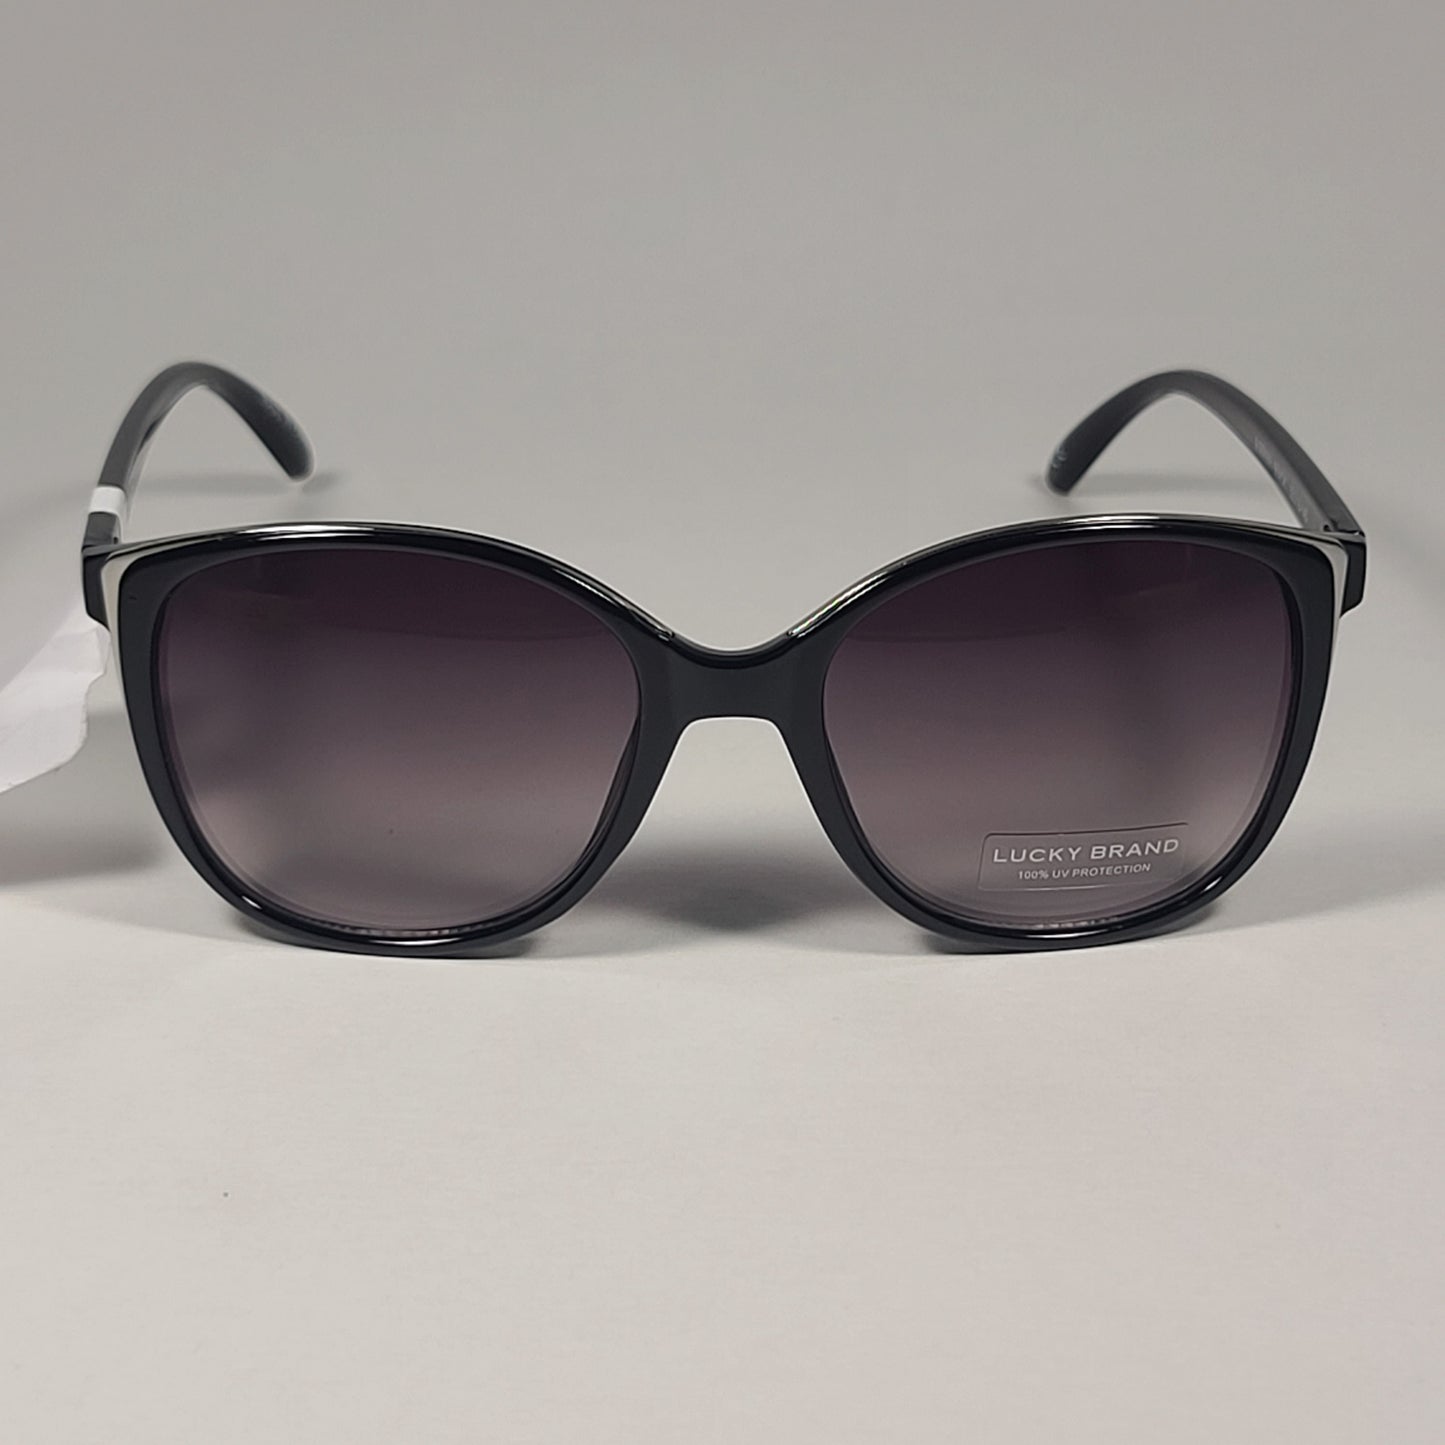 Lucky Brand SLBD101 Cat Eye Sunglasses Shiny Black Silver Frame Gray Gradient Lens - Sunglasses